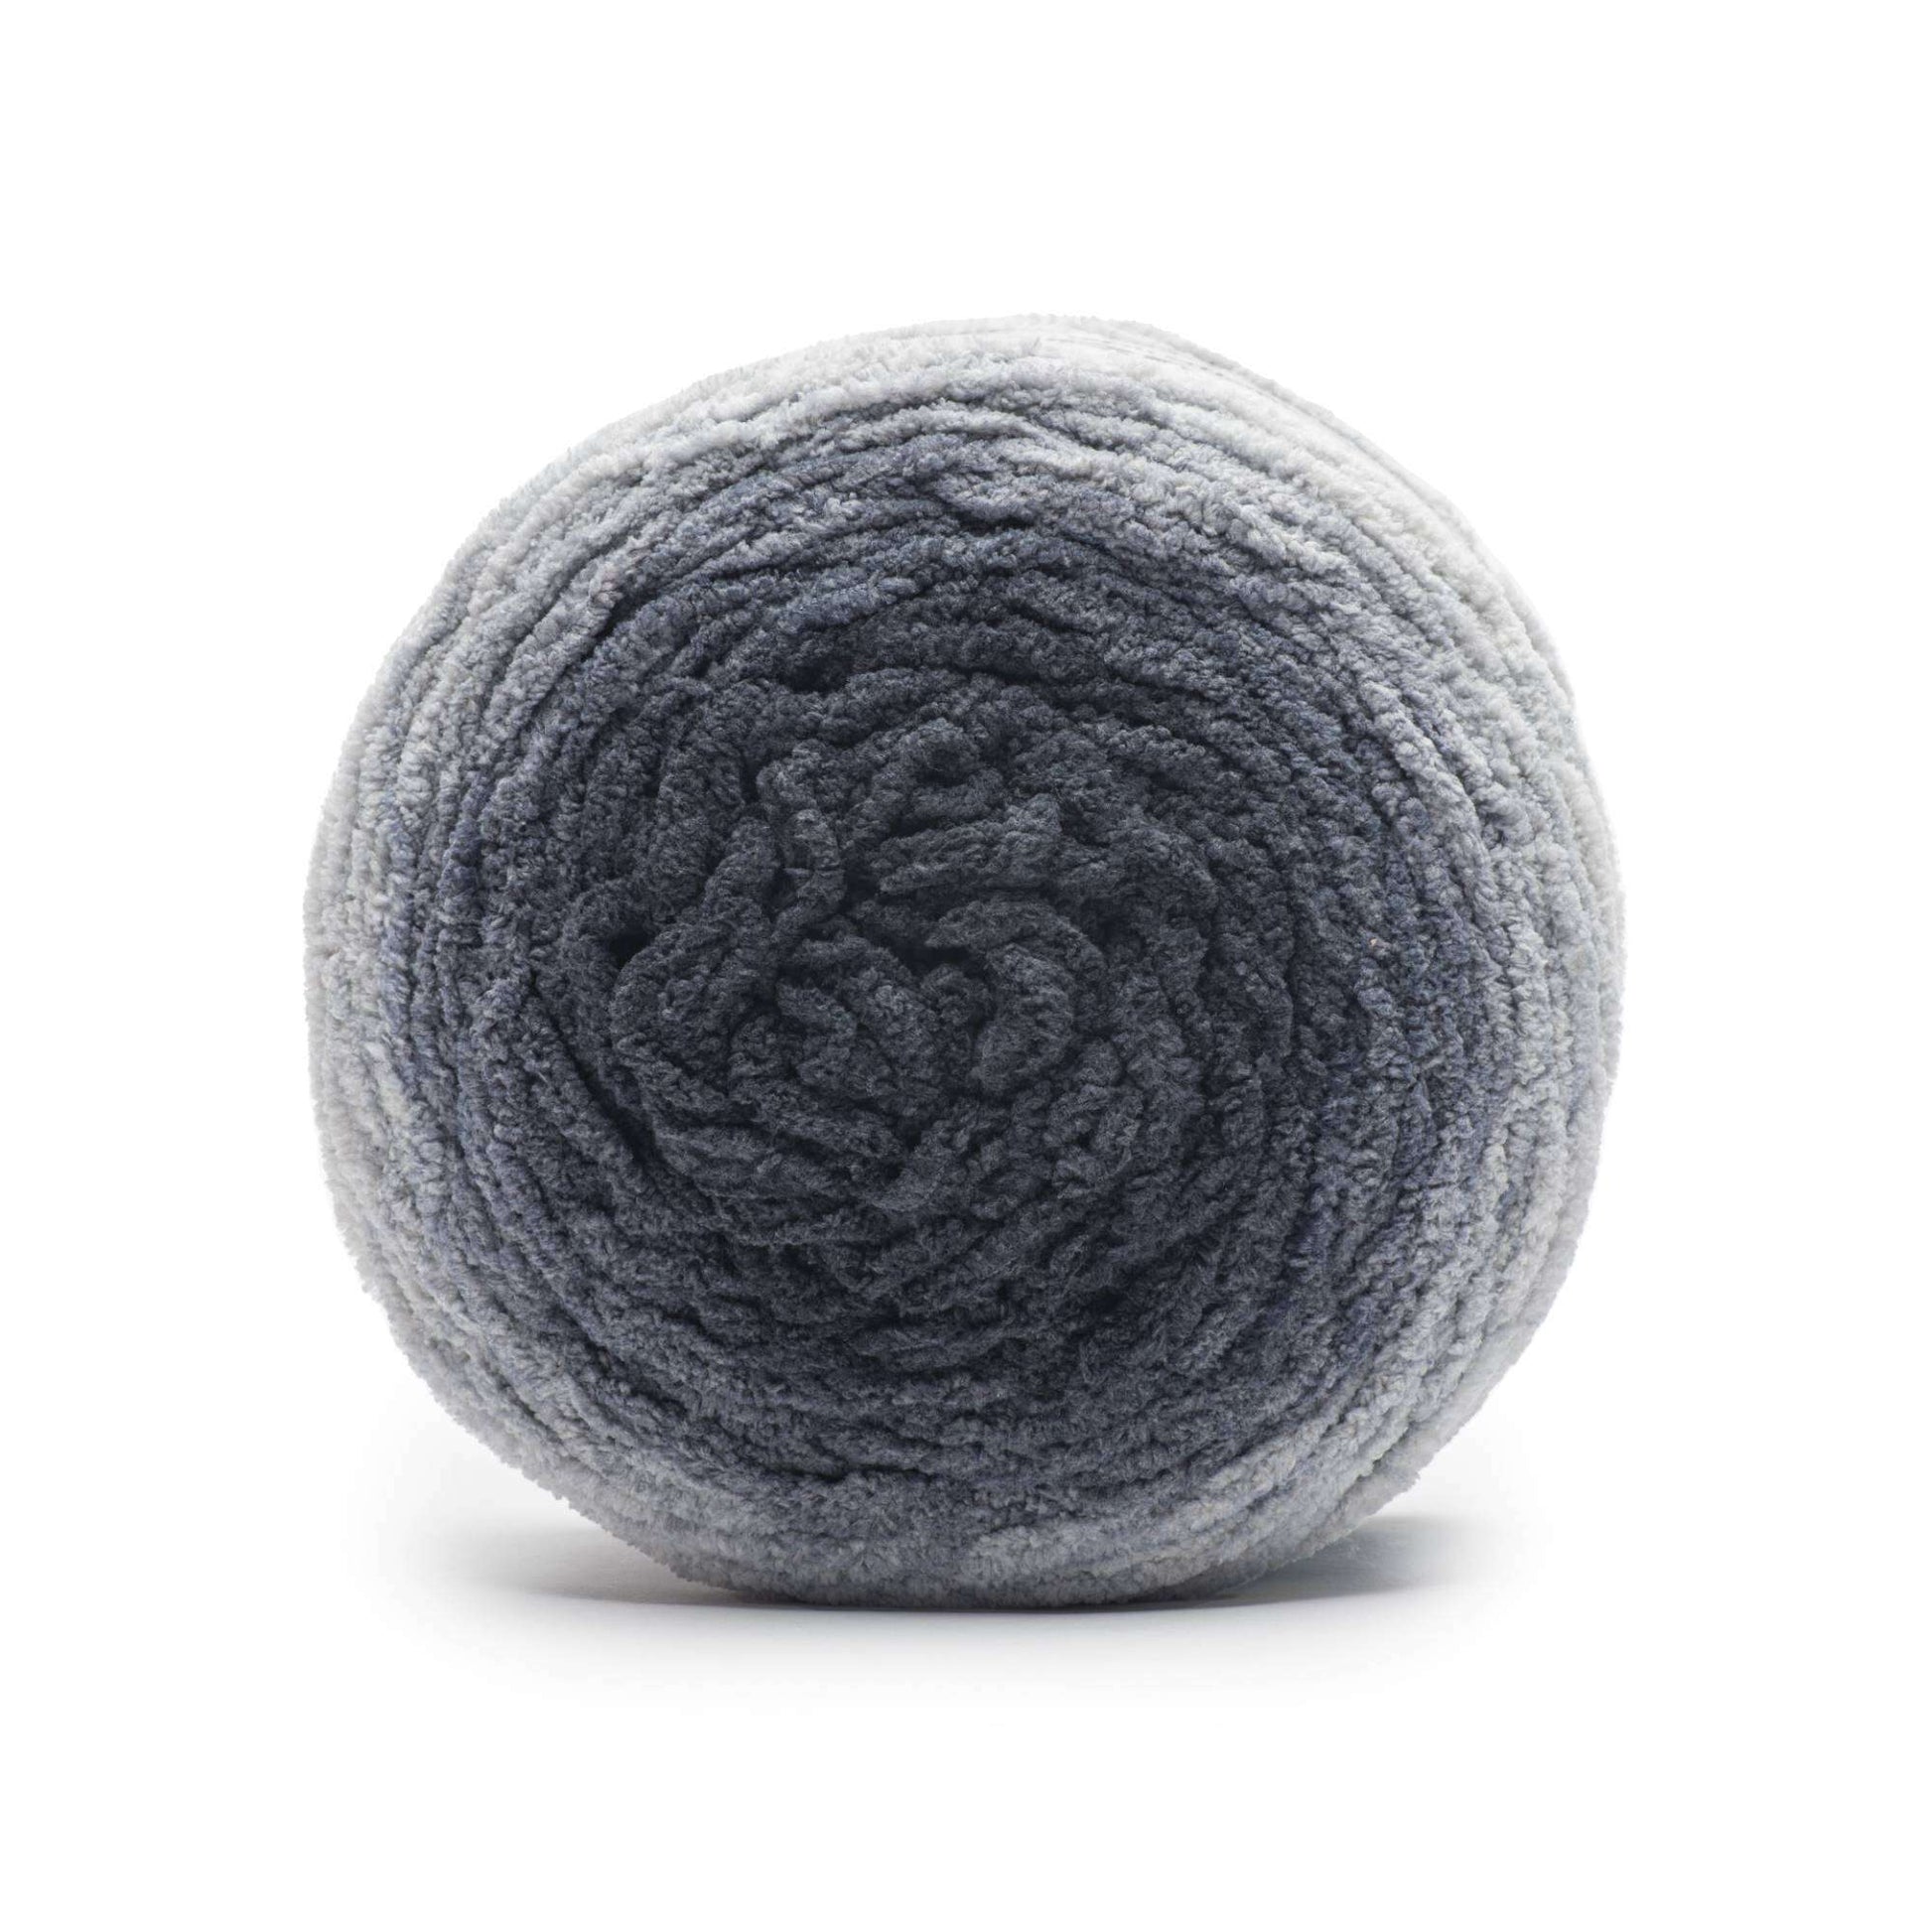 Bernat Blanket Crimson Yarn - 2 Pack of 300g/10.5oz - Polyester - 6 Super Bulky - 220 Yards - Knitting/Crochet